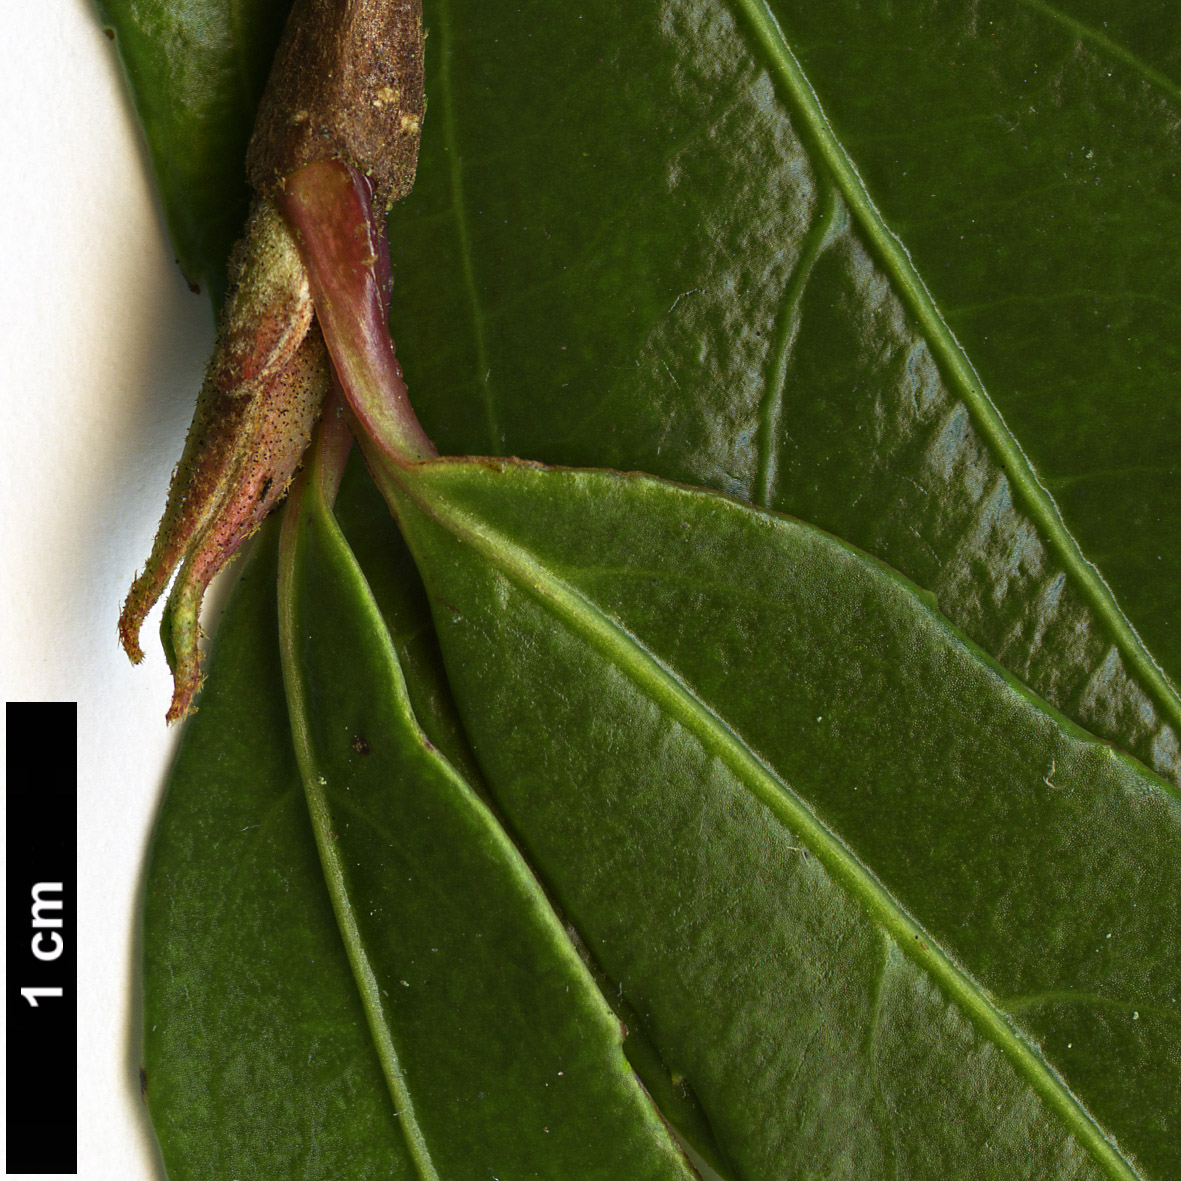 High resolution image: Family: Adoxaceae - Genus: Viburnum - Taxon: oliganthum